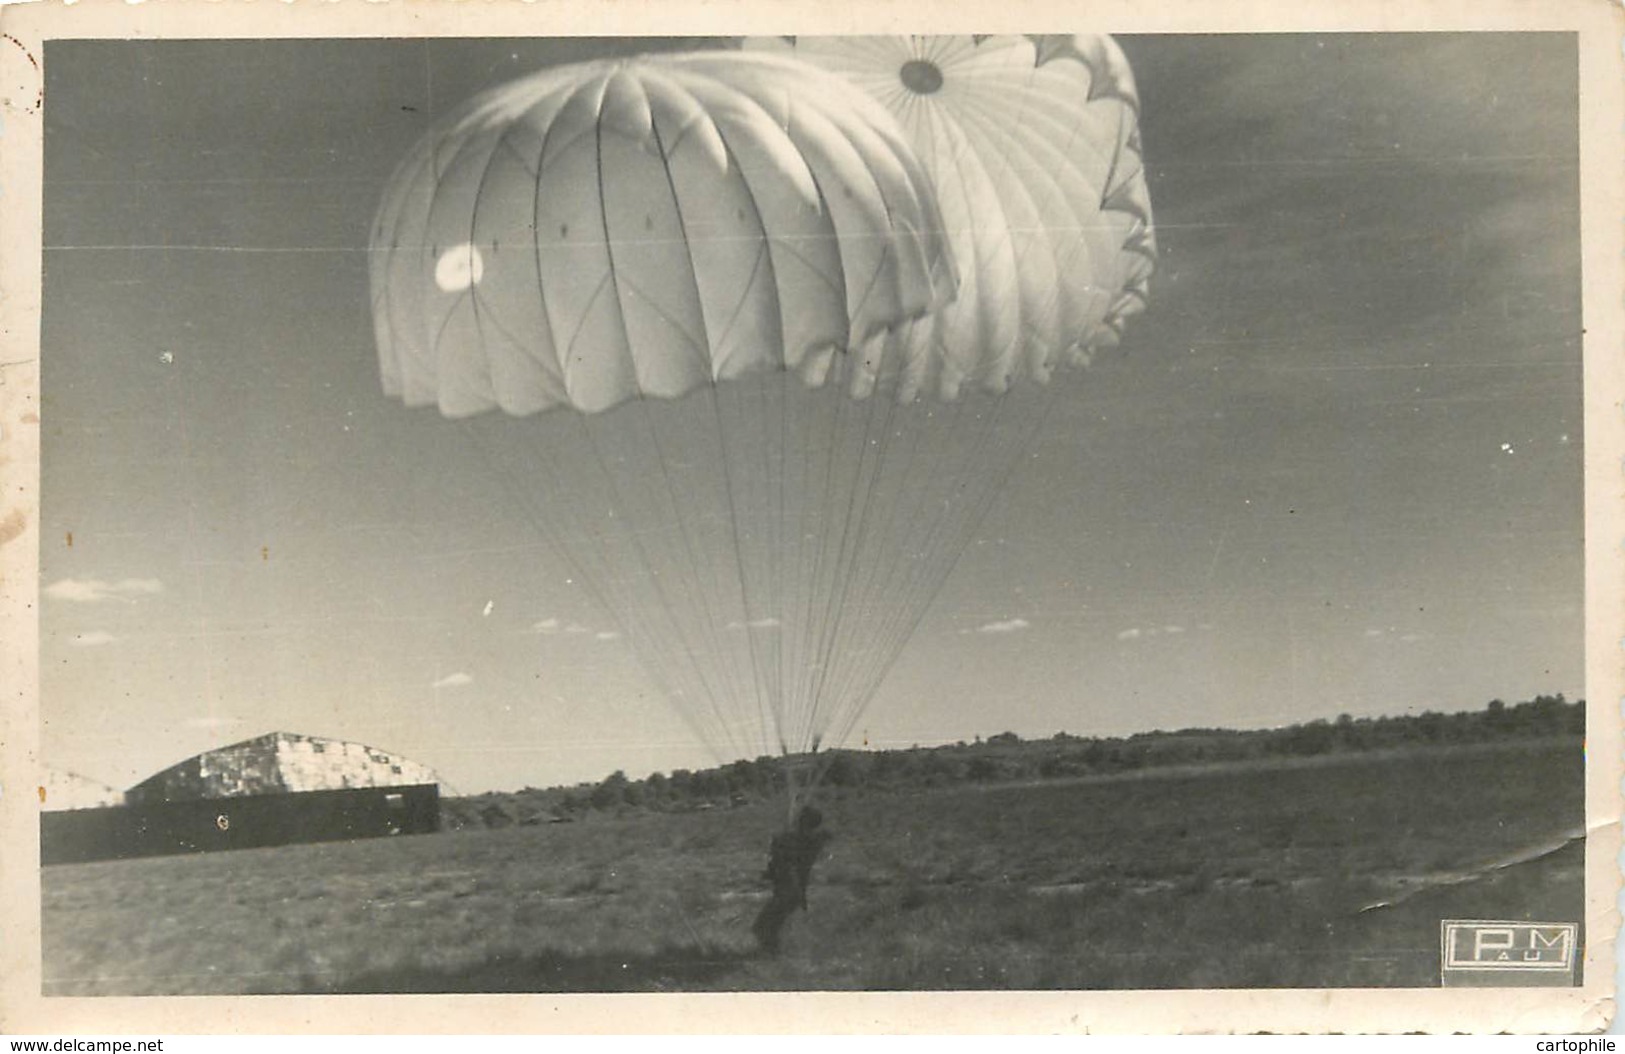 MILITARIA PARACHUTISME - Lot De 2 Photos D'un Saut En Parachute Aux Alentours De PAU Années 1940 - Parachutisme